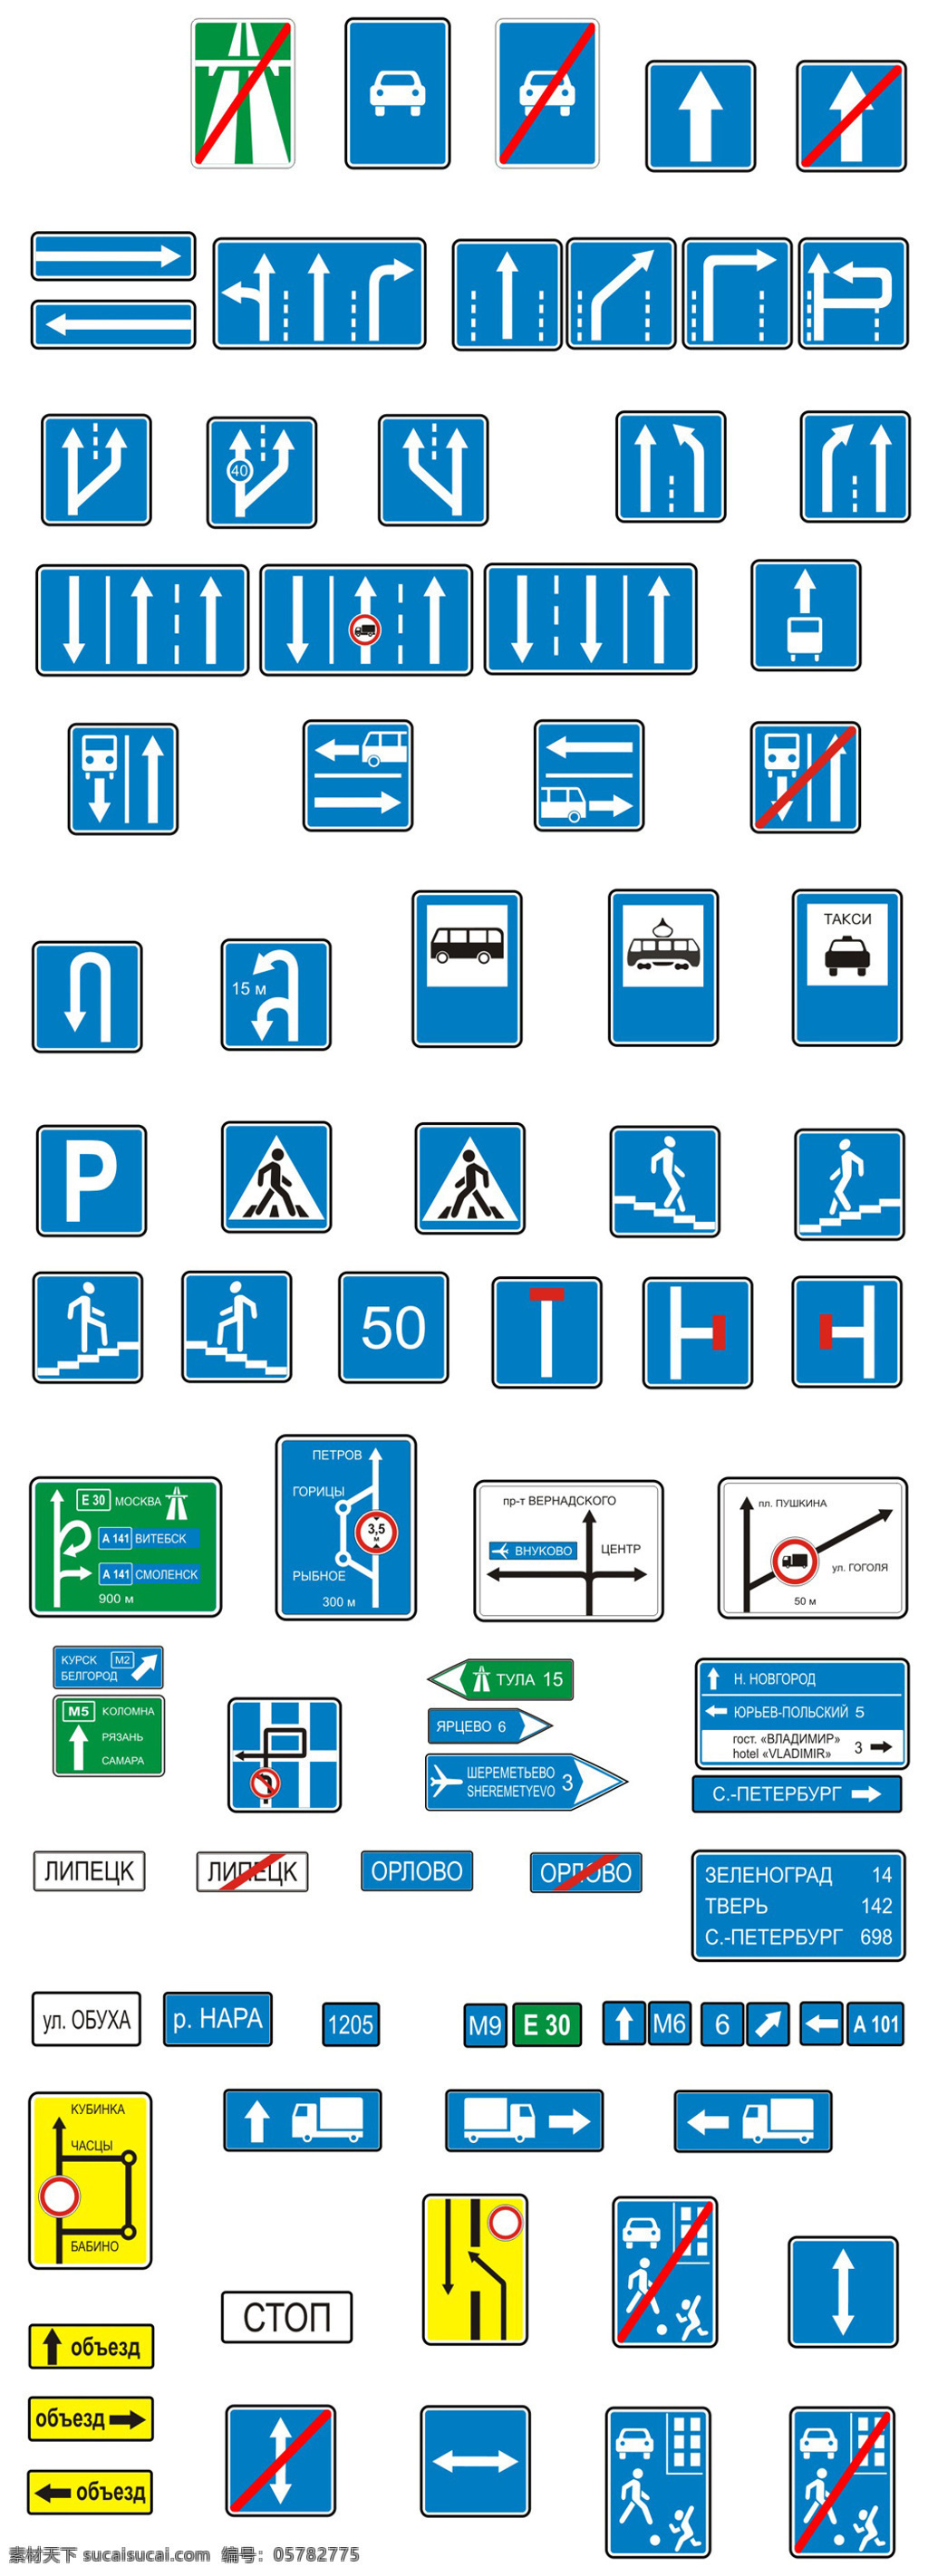 俄罗斯 版 道路 标识 标志 矢量 儿童矢量图 风景cdr 矢量卡通图 矢量情侣图 矢量图免费